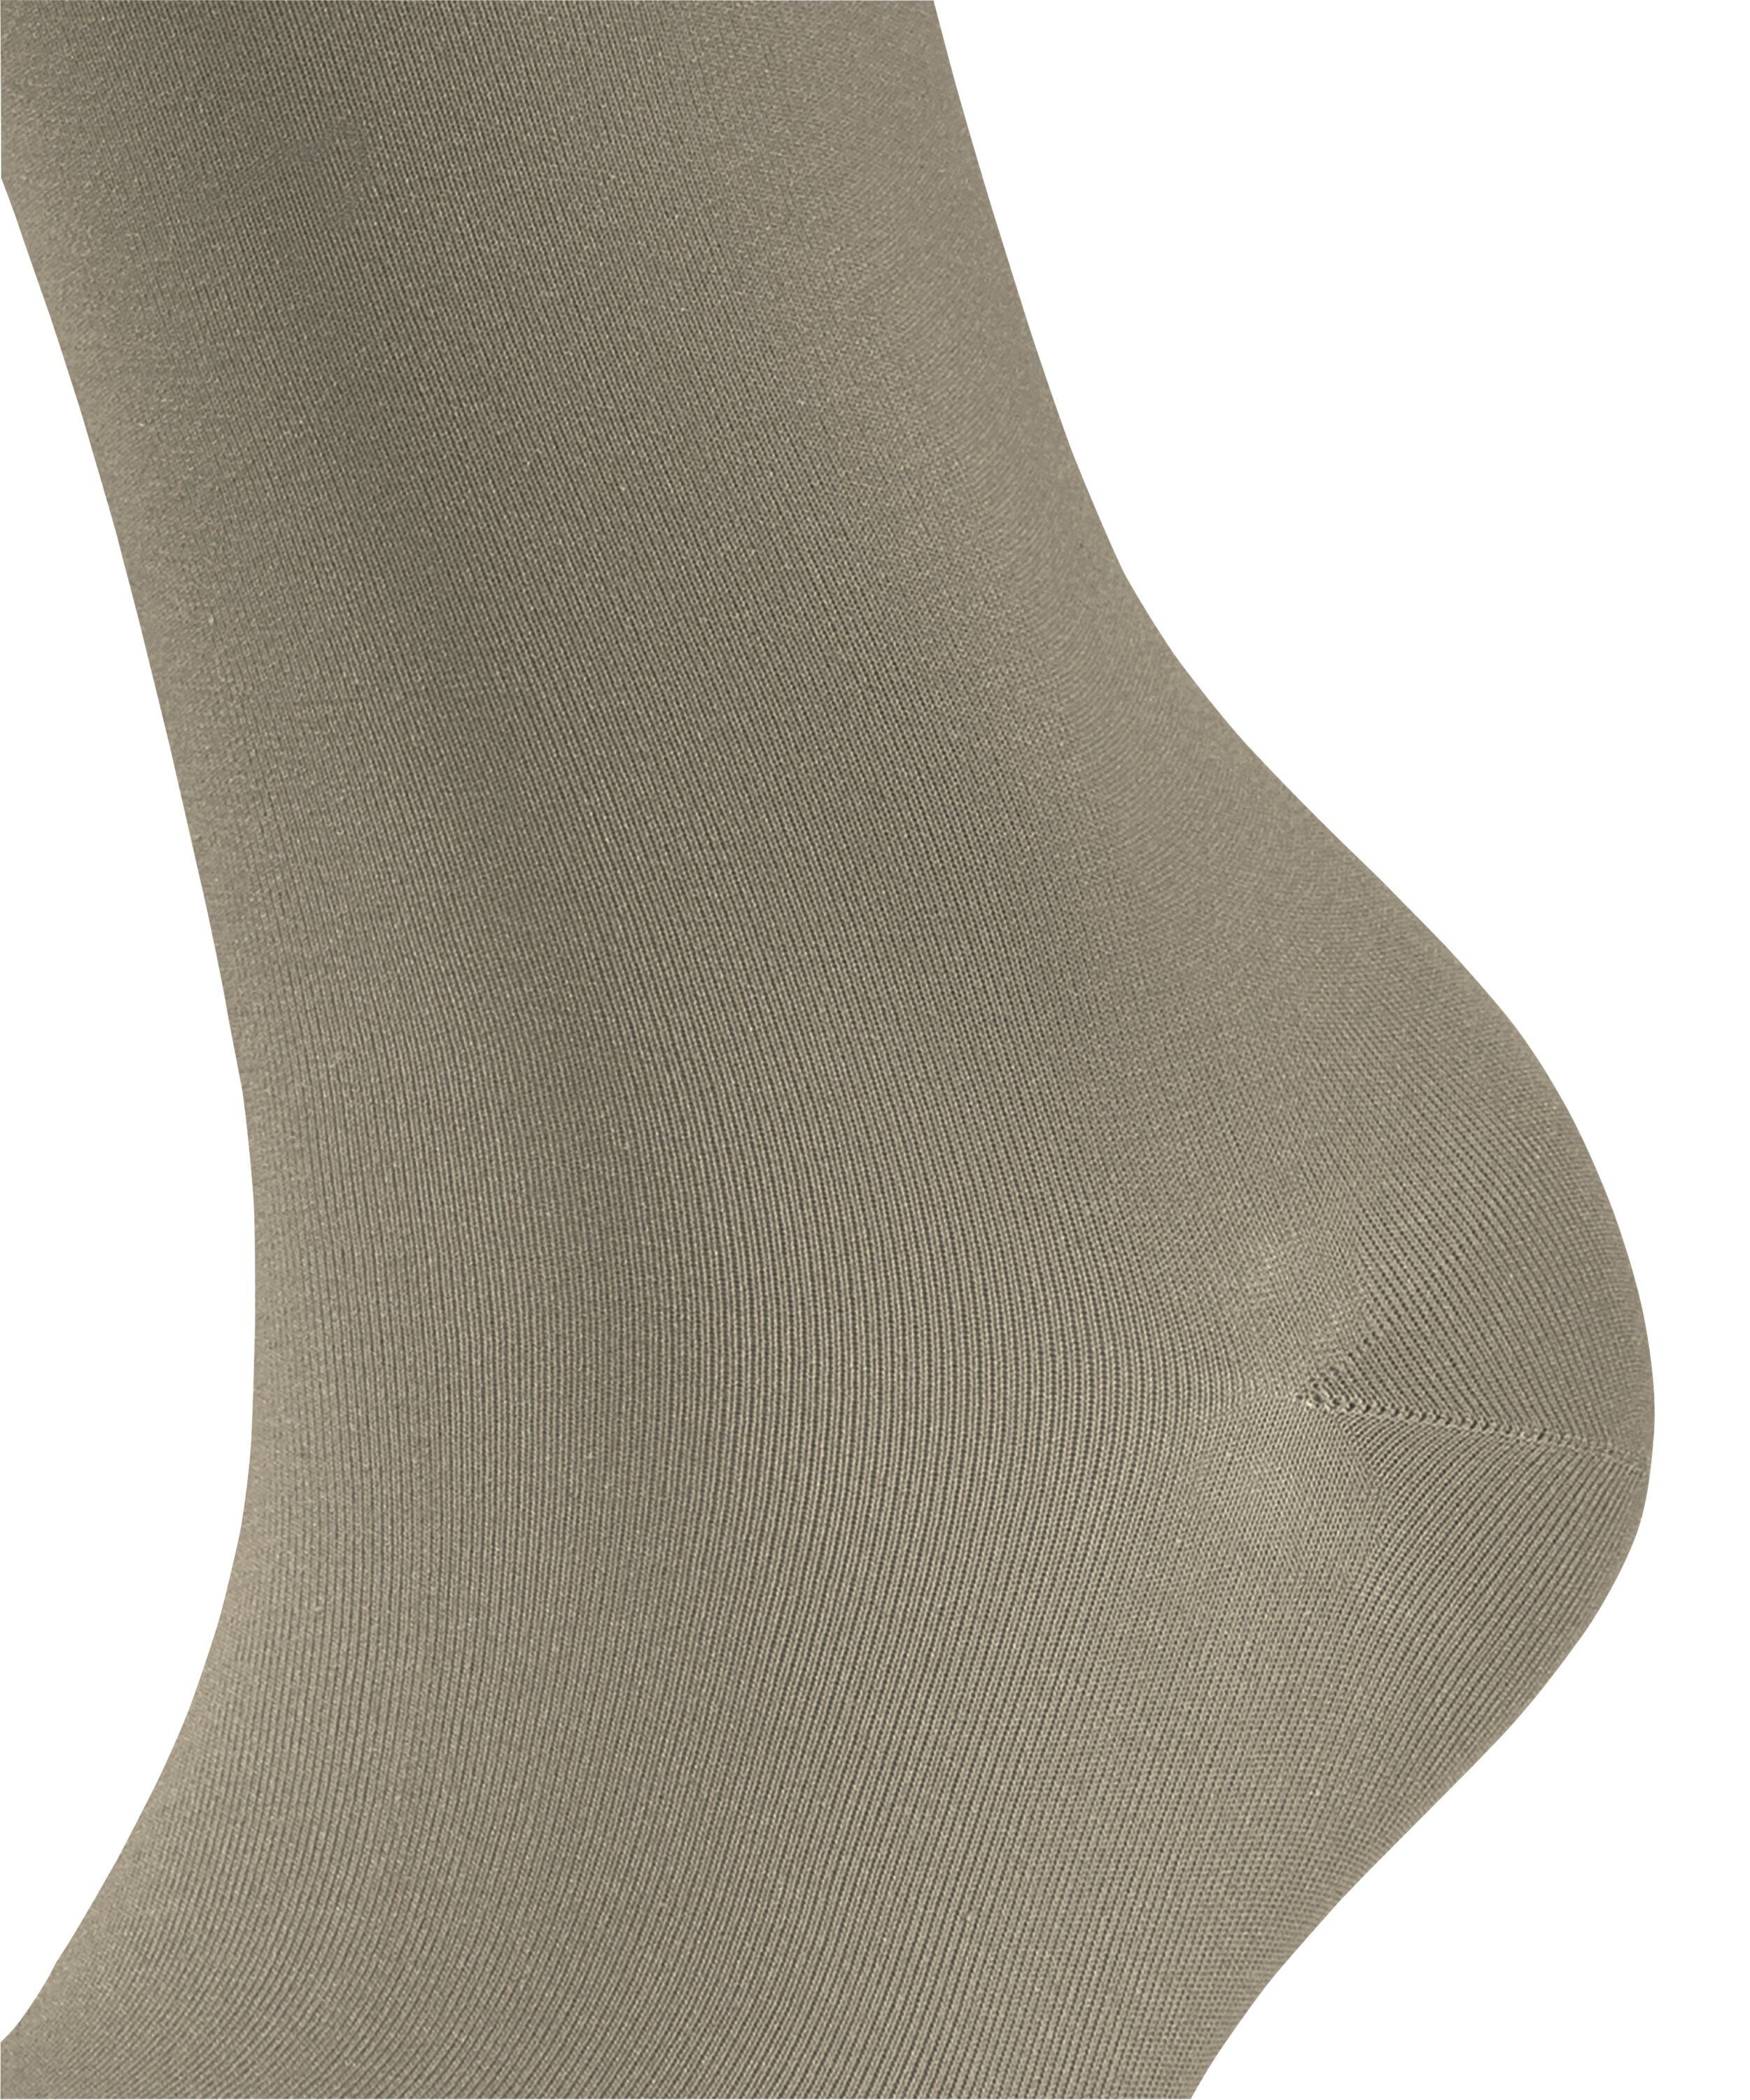 pale Socken Touch Cotton (1-Paar) (7110) FALKE khaki